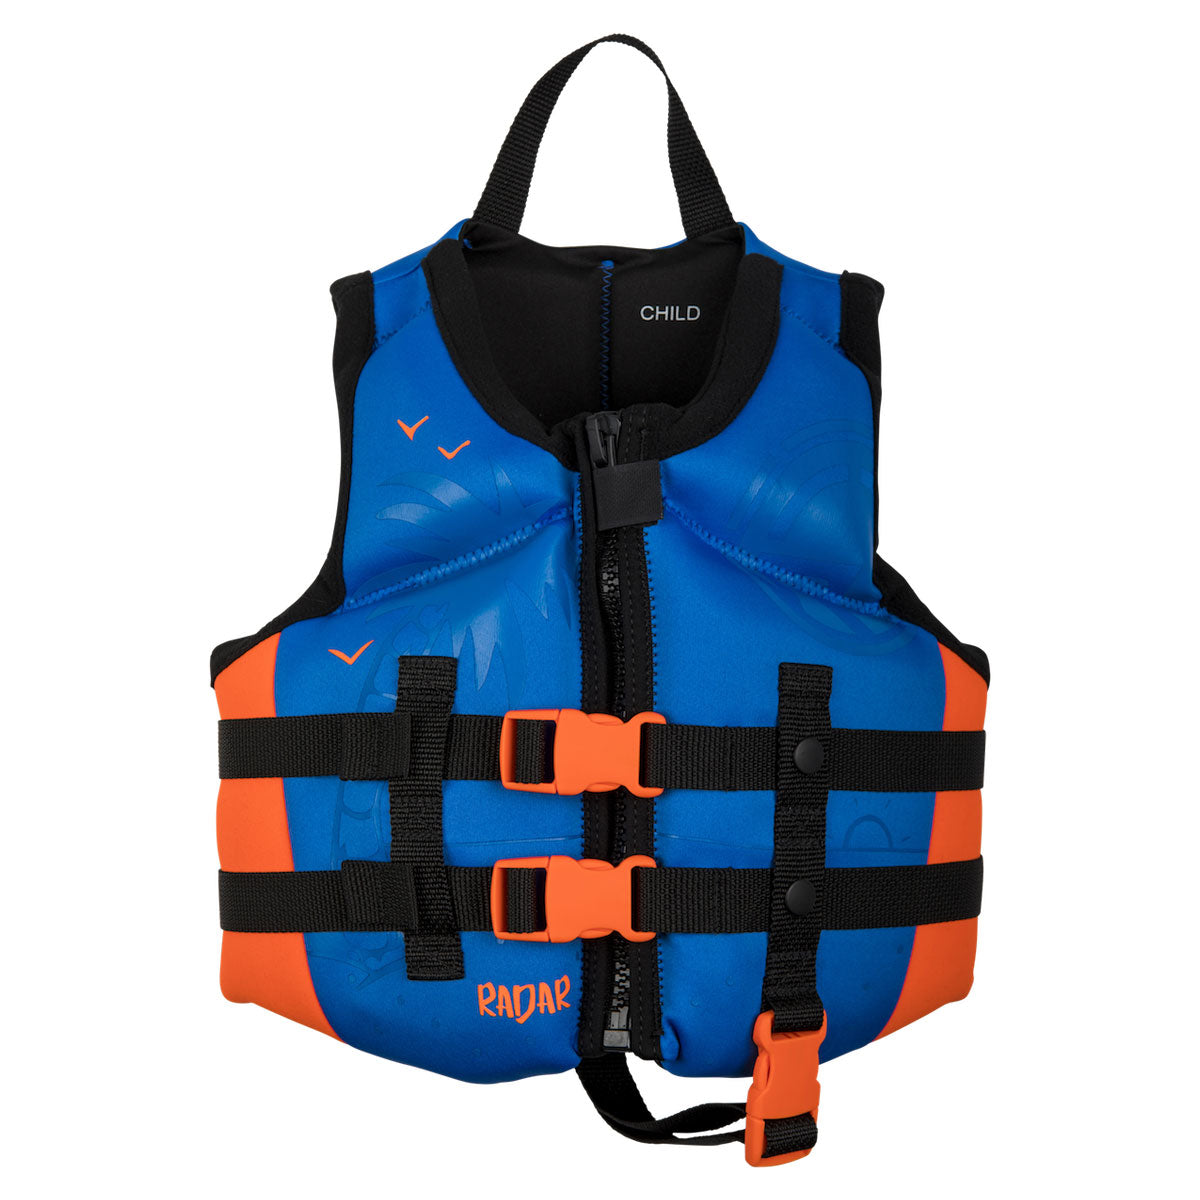 Radar Boy's Child Vest (30-50 lbs) - Blue/Orange